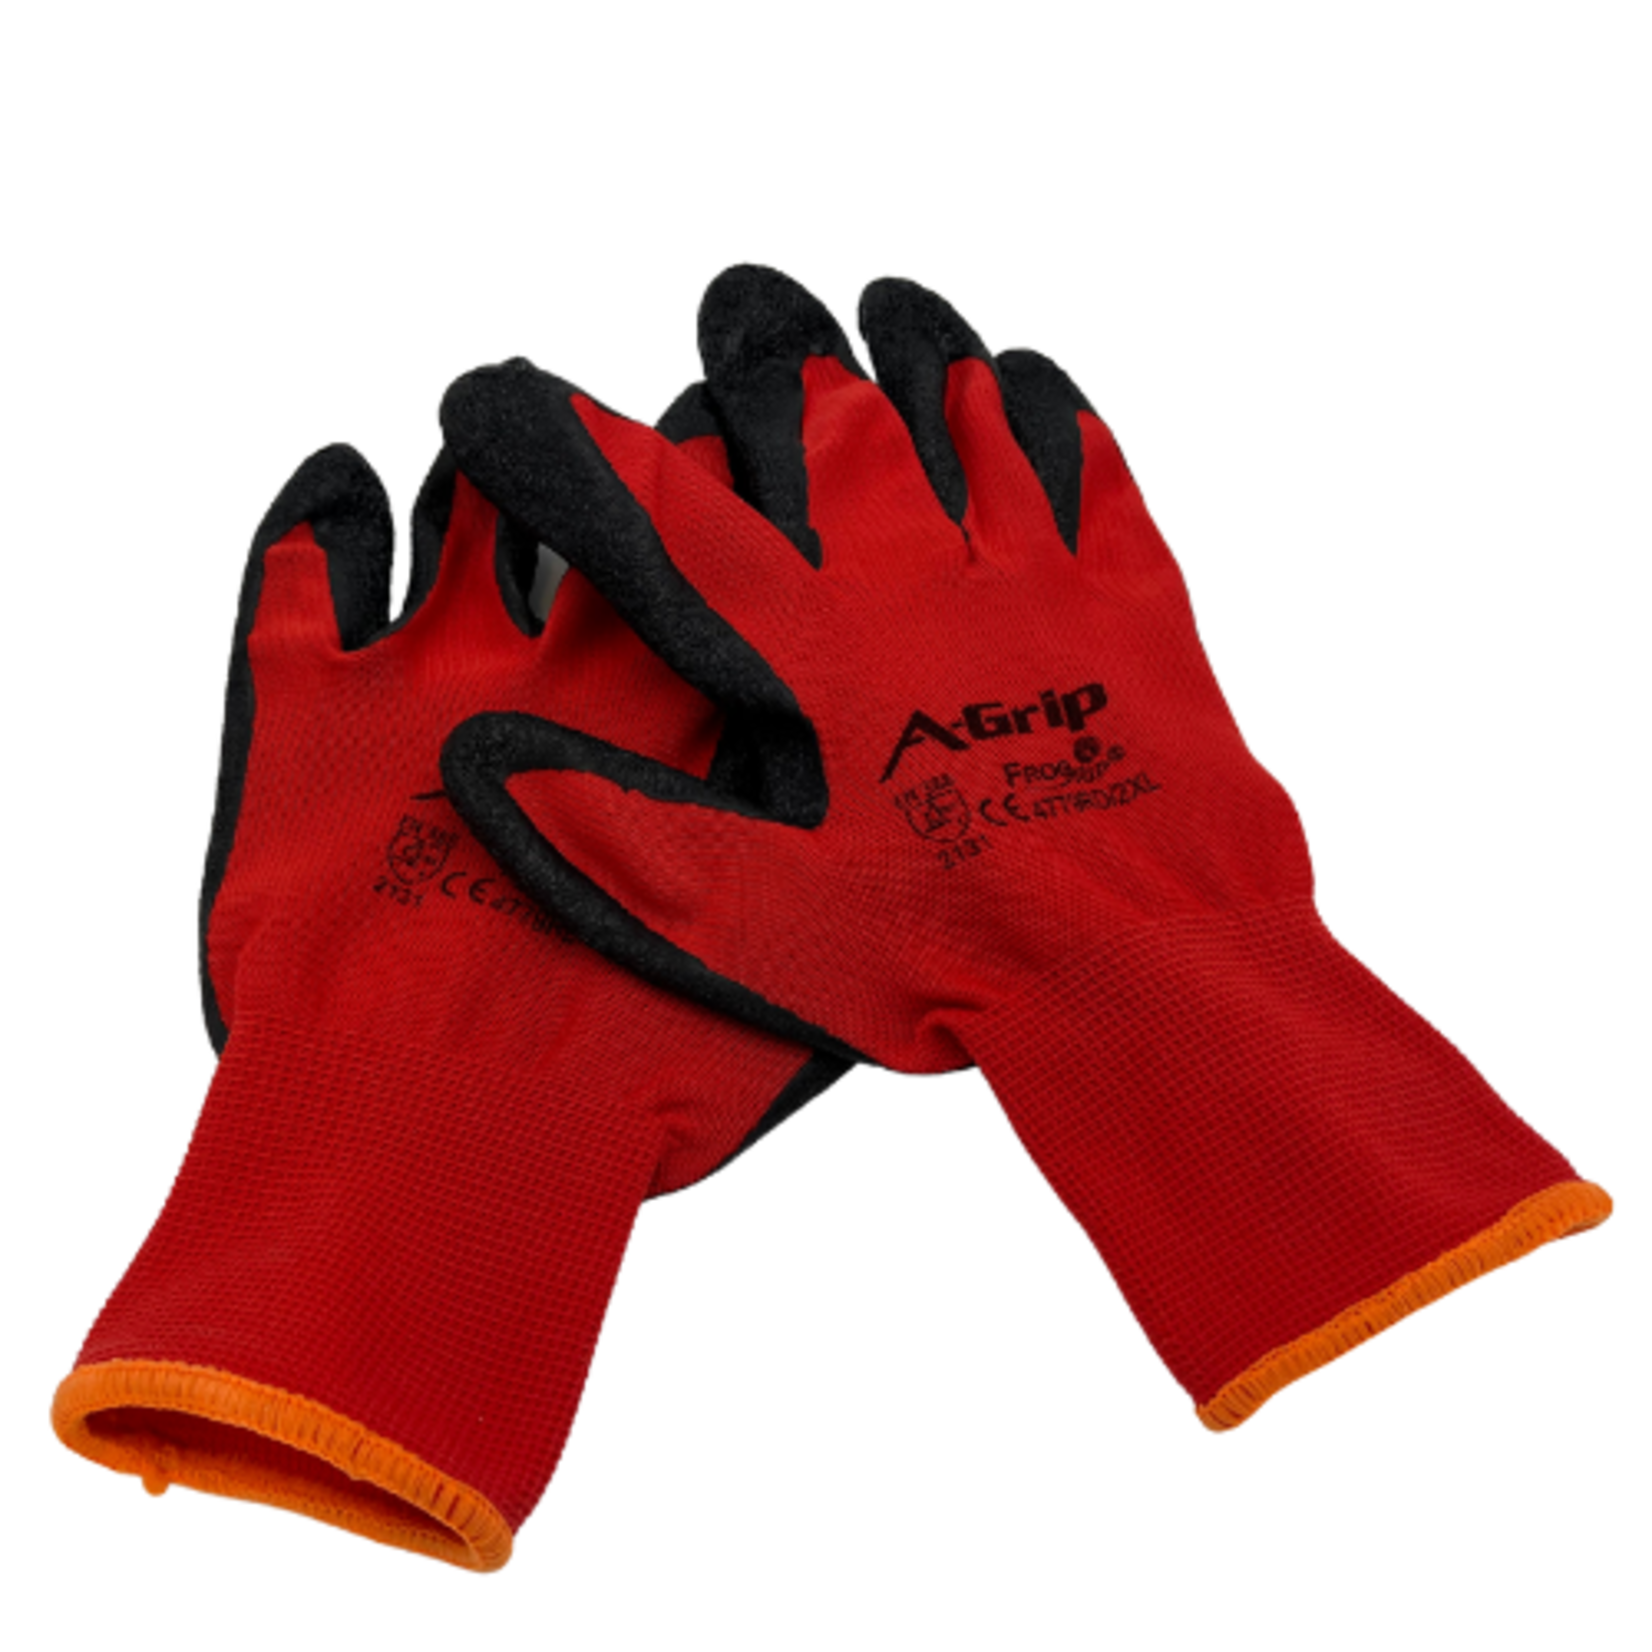 Industrial Work Glove XL